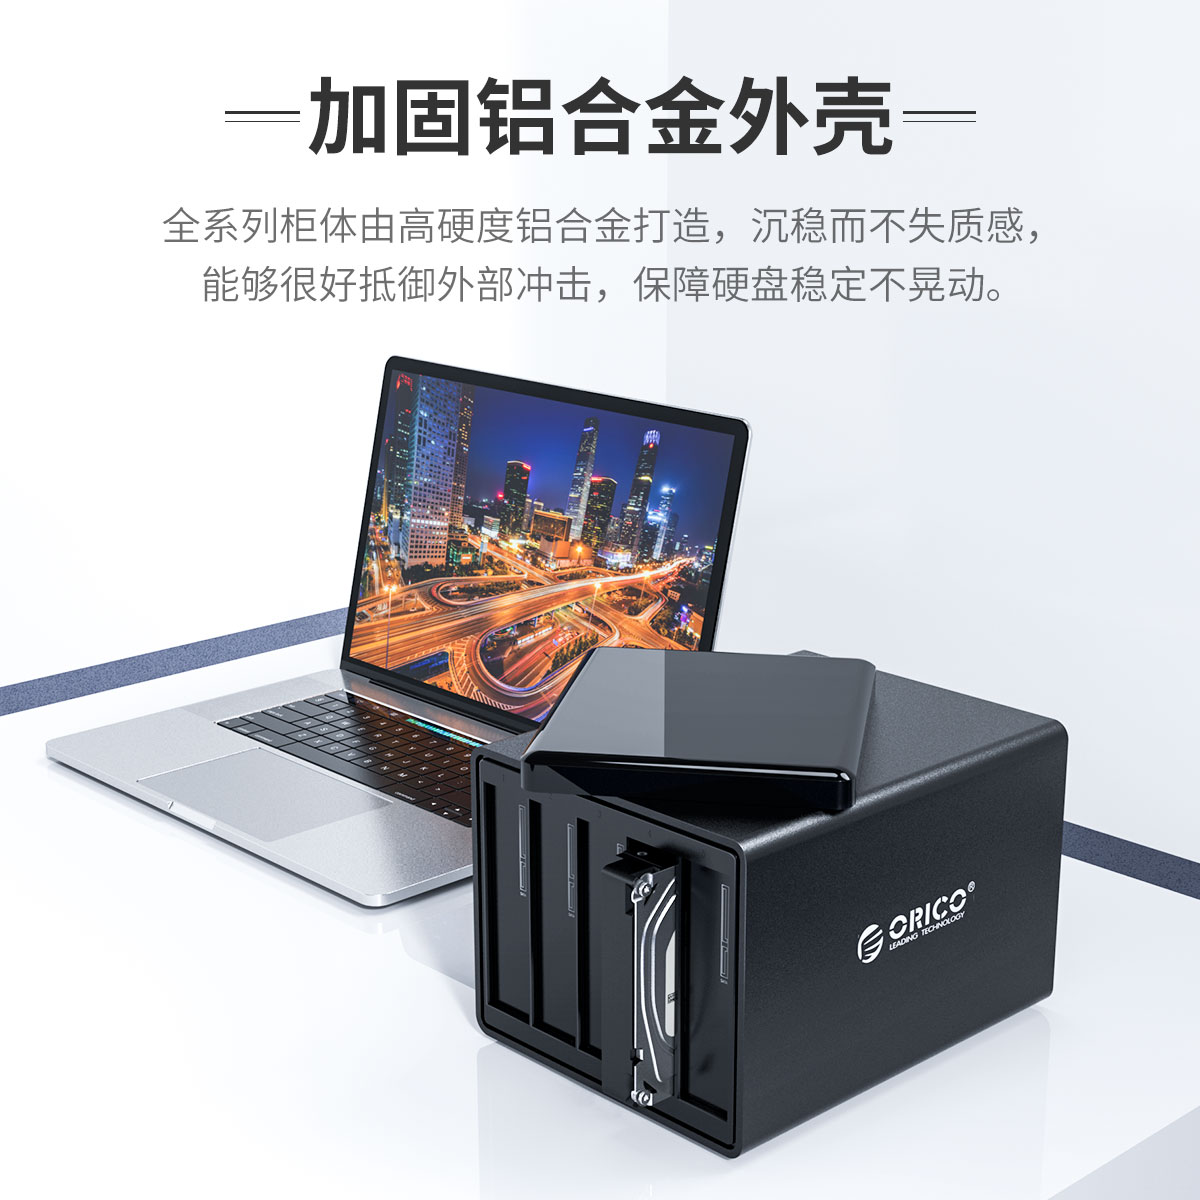 3.5英寸五盘位USB3.0磁盘阵列柜|ORICO 磁盘阵列存储系统